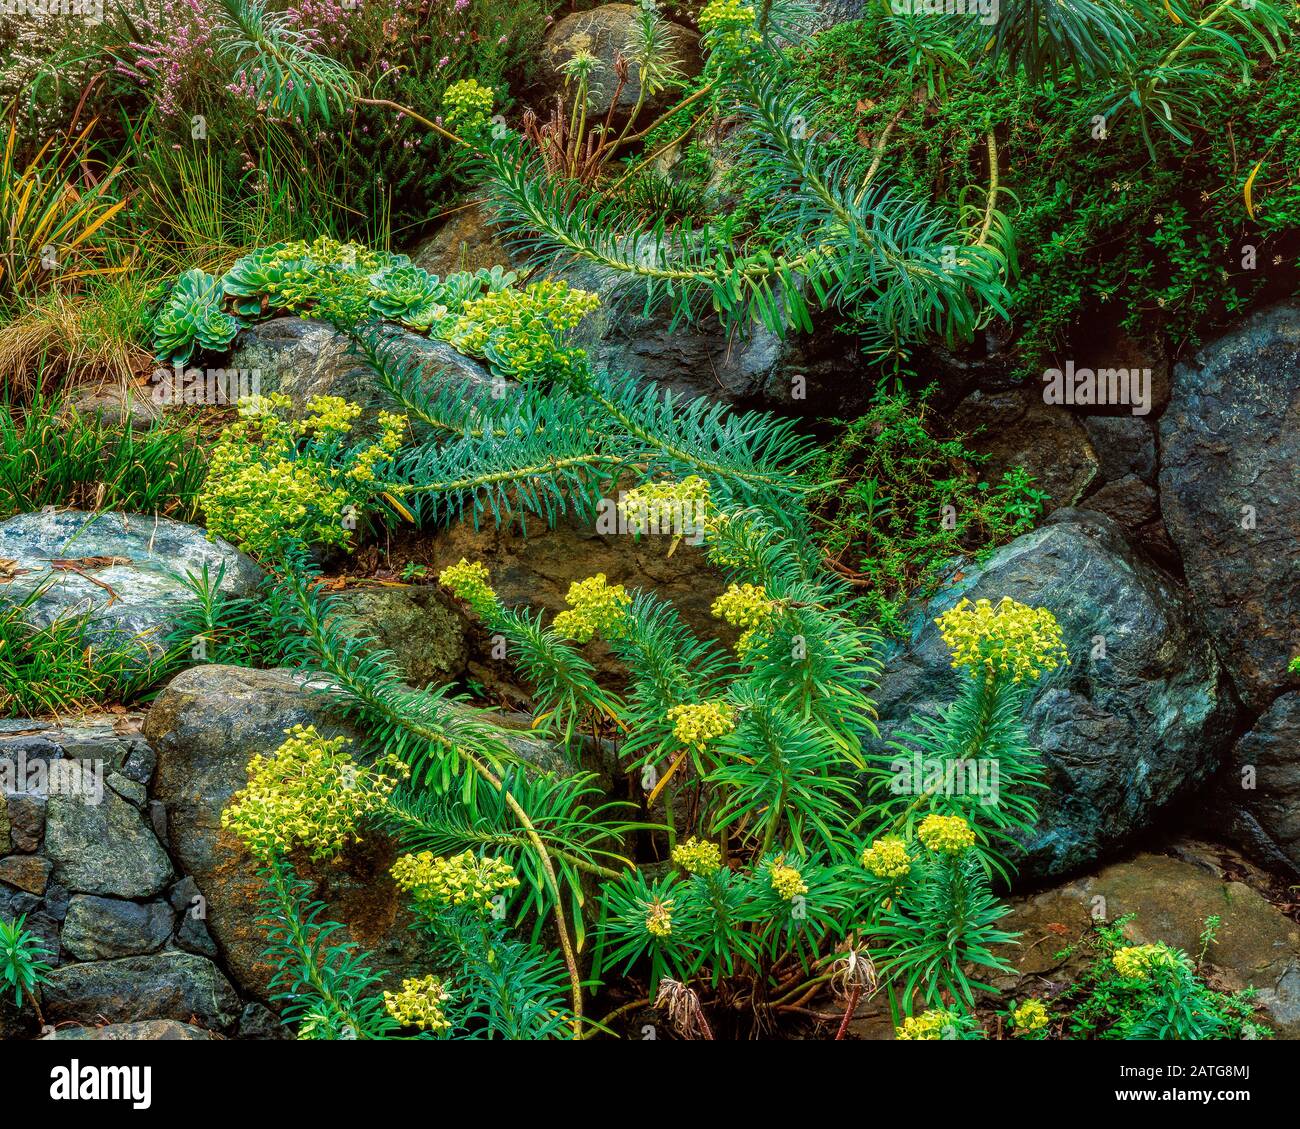 Euphorbia, Euphorbia amygdaloides, Fern Canyon Gardens, Mill Valley California Stock Photo